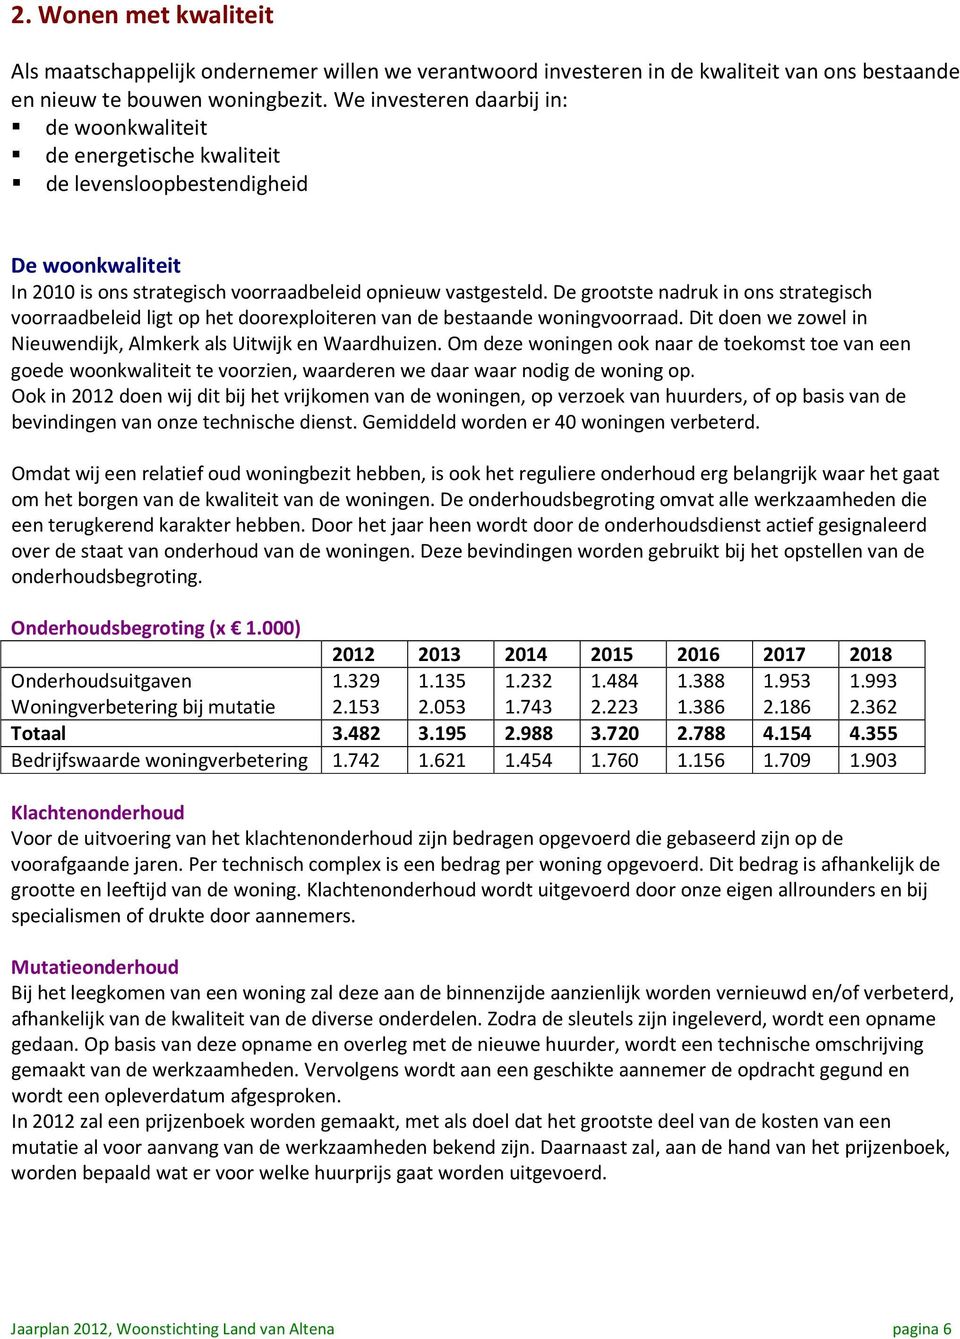 De grootste nadruk in ons strategisch voorraadbeleid ligt op het doorexploiteren van de bestaande woningvoorraad. Dit doen we zowel in Nieuwendijk, Almkerk als Uitwijk en Waardhuizen.